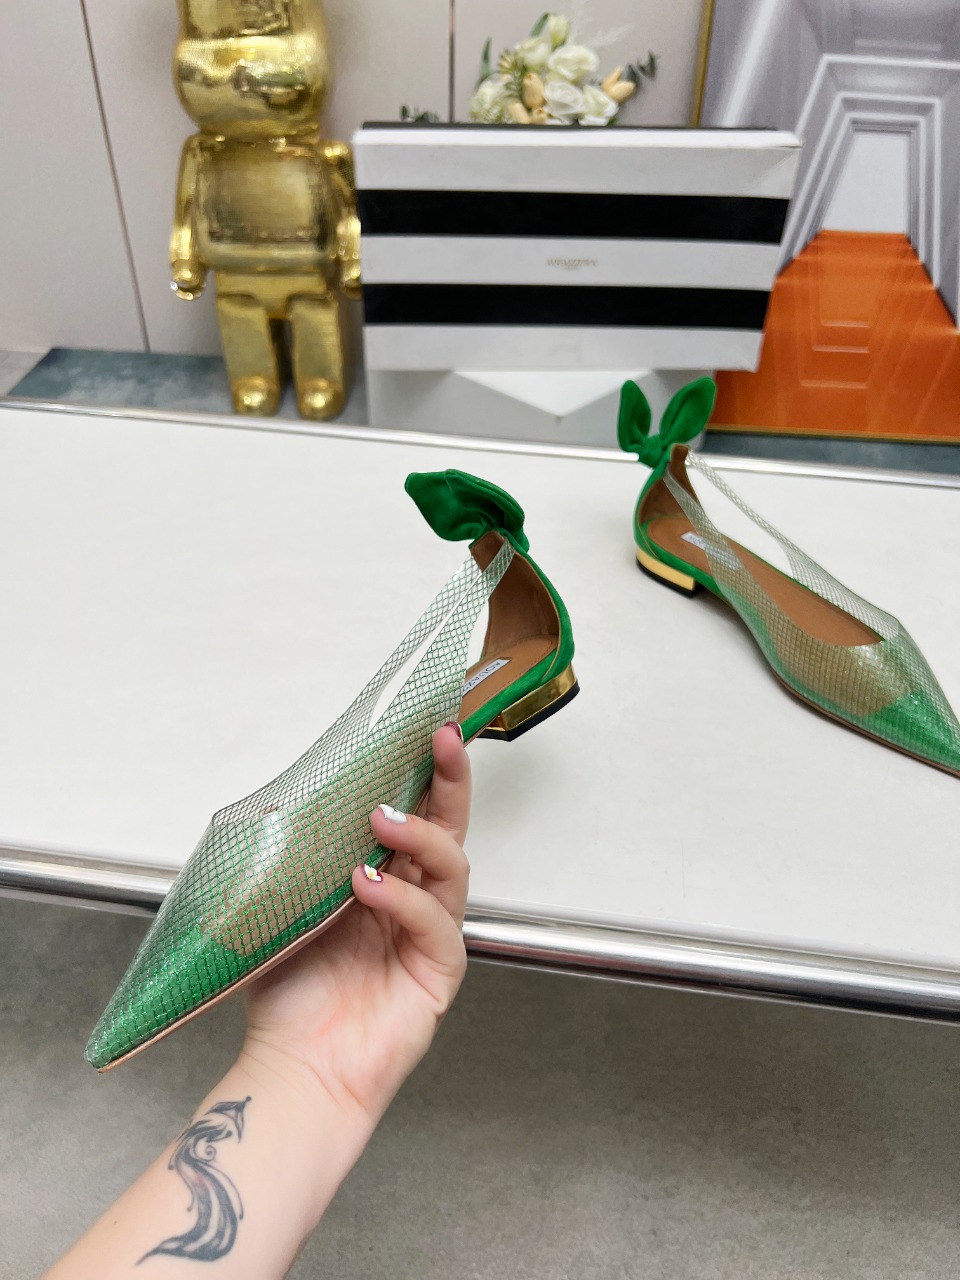 菠萝春夏专柜新品平底凉鞋去专柜的第一眼就看中了！精致的鞋楦后跟很特别的兔耳朵设计很吸引人眼球原版复刻顶级